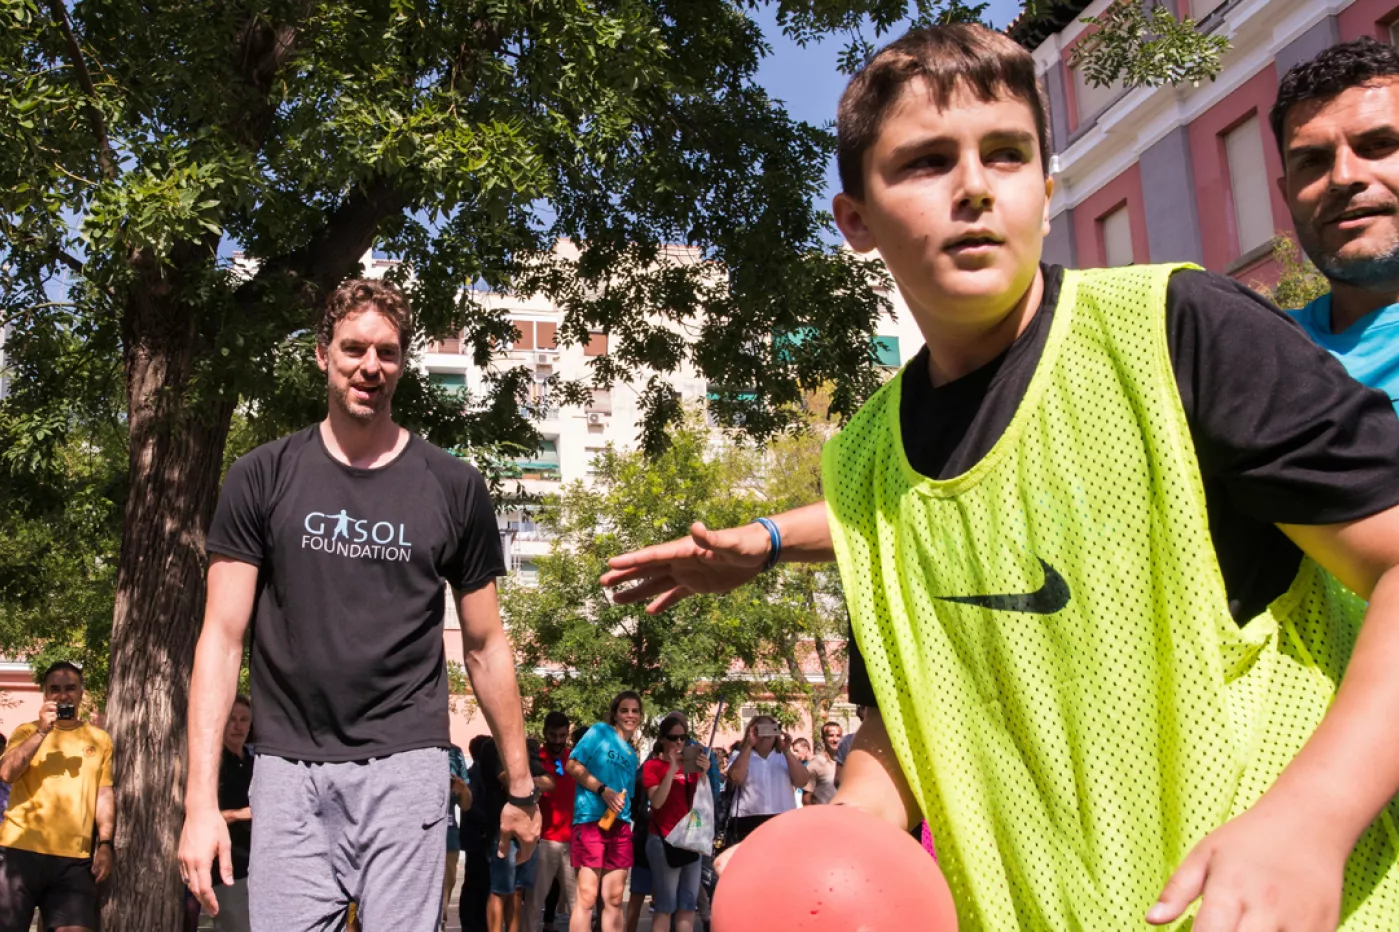 El jugador de baloncesto, Pau Gasol, en la presentación del Estudio 'Pasos', realizado por la fundación que lleva su apellido.